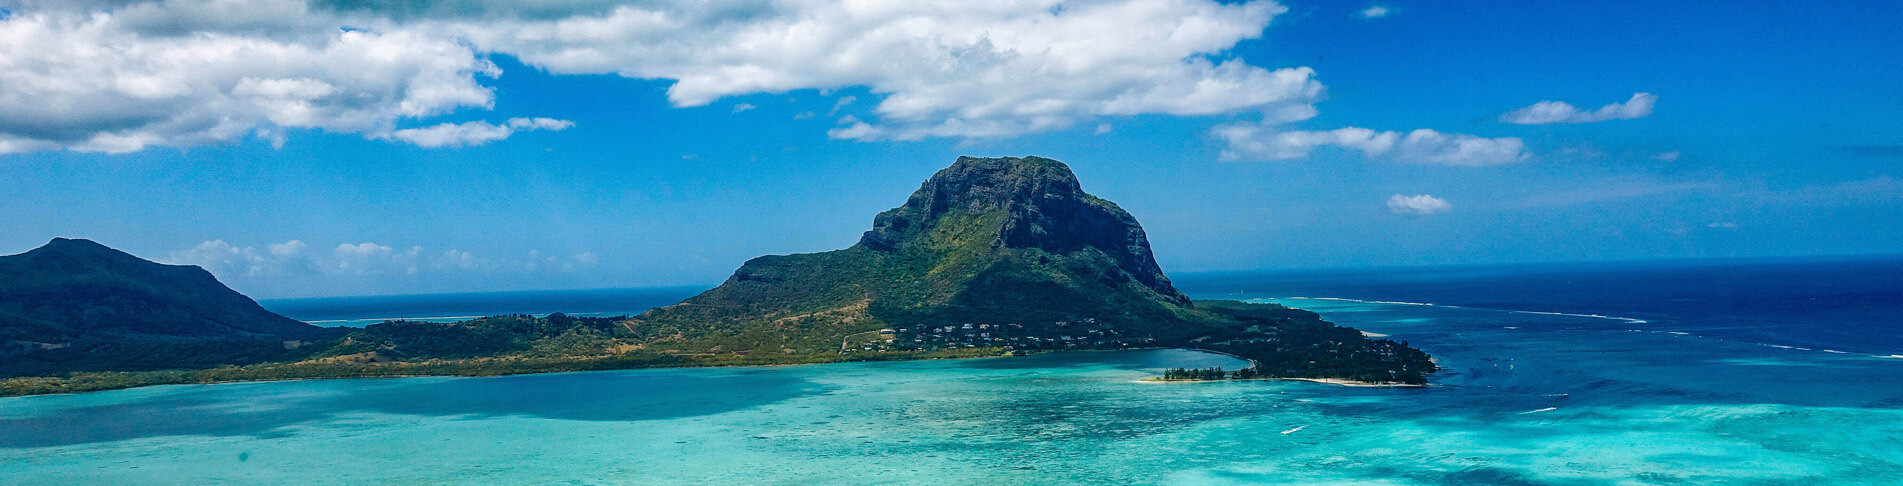 Mauritius Urlaub im Indischen Ozean